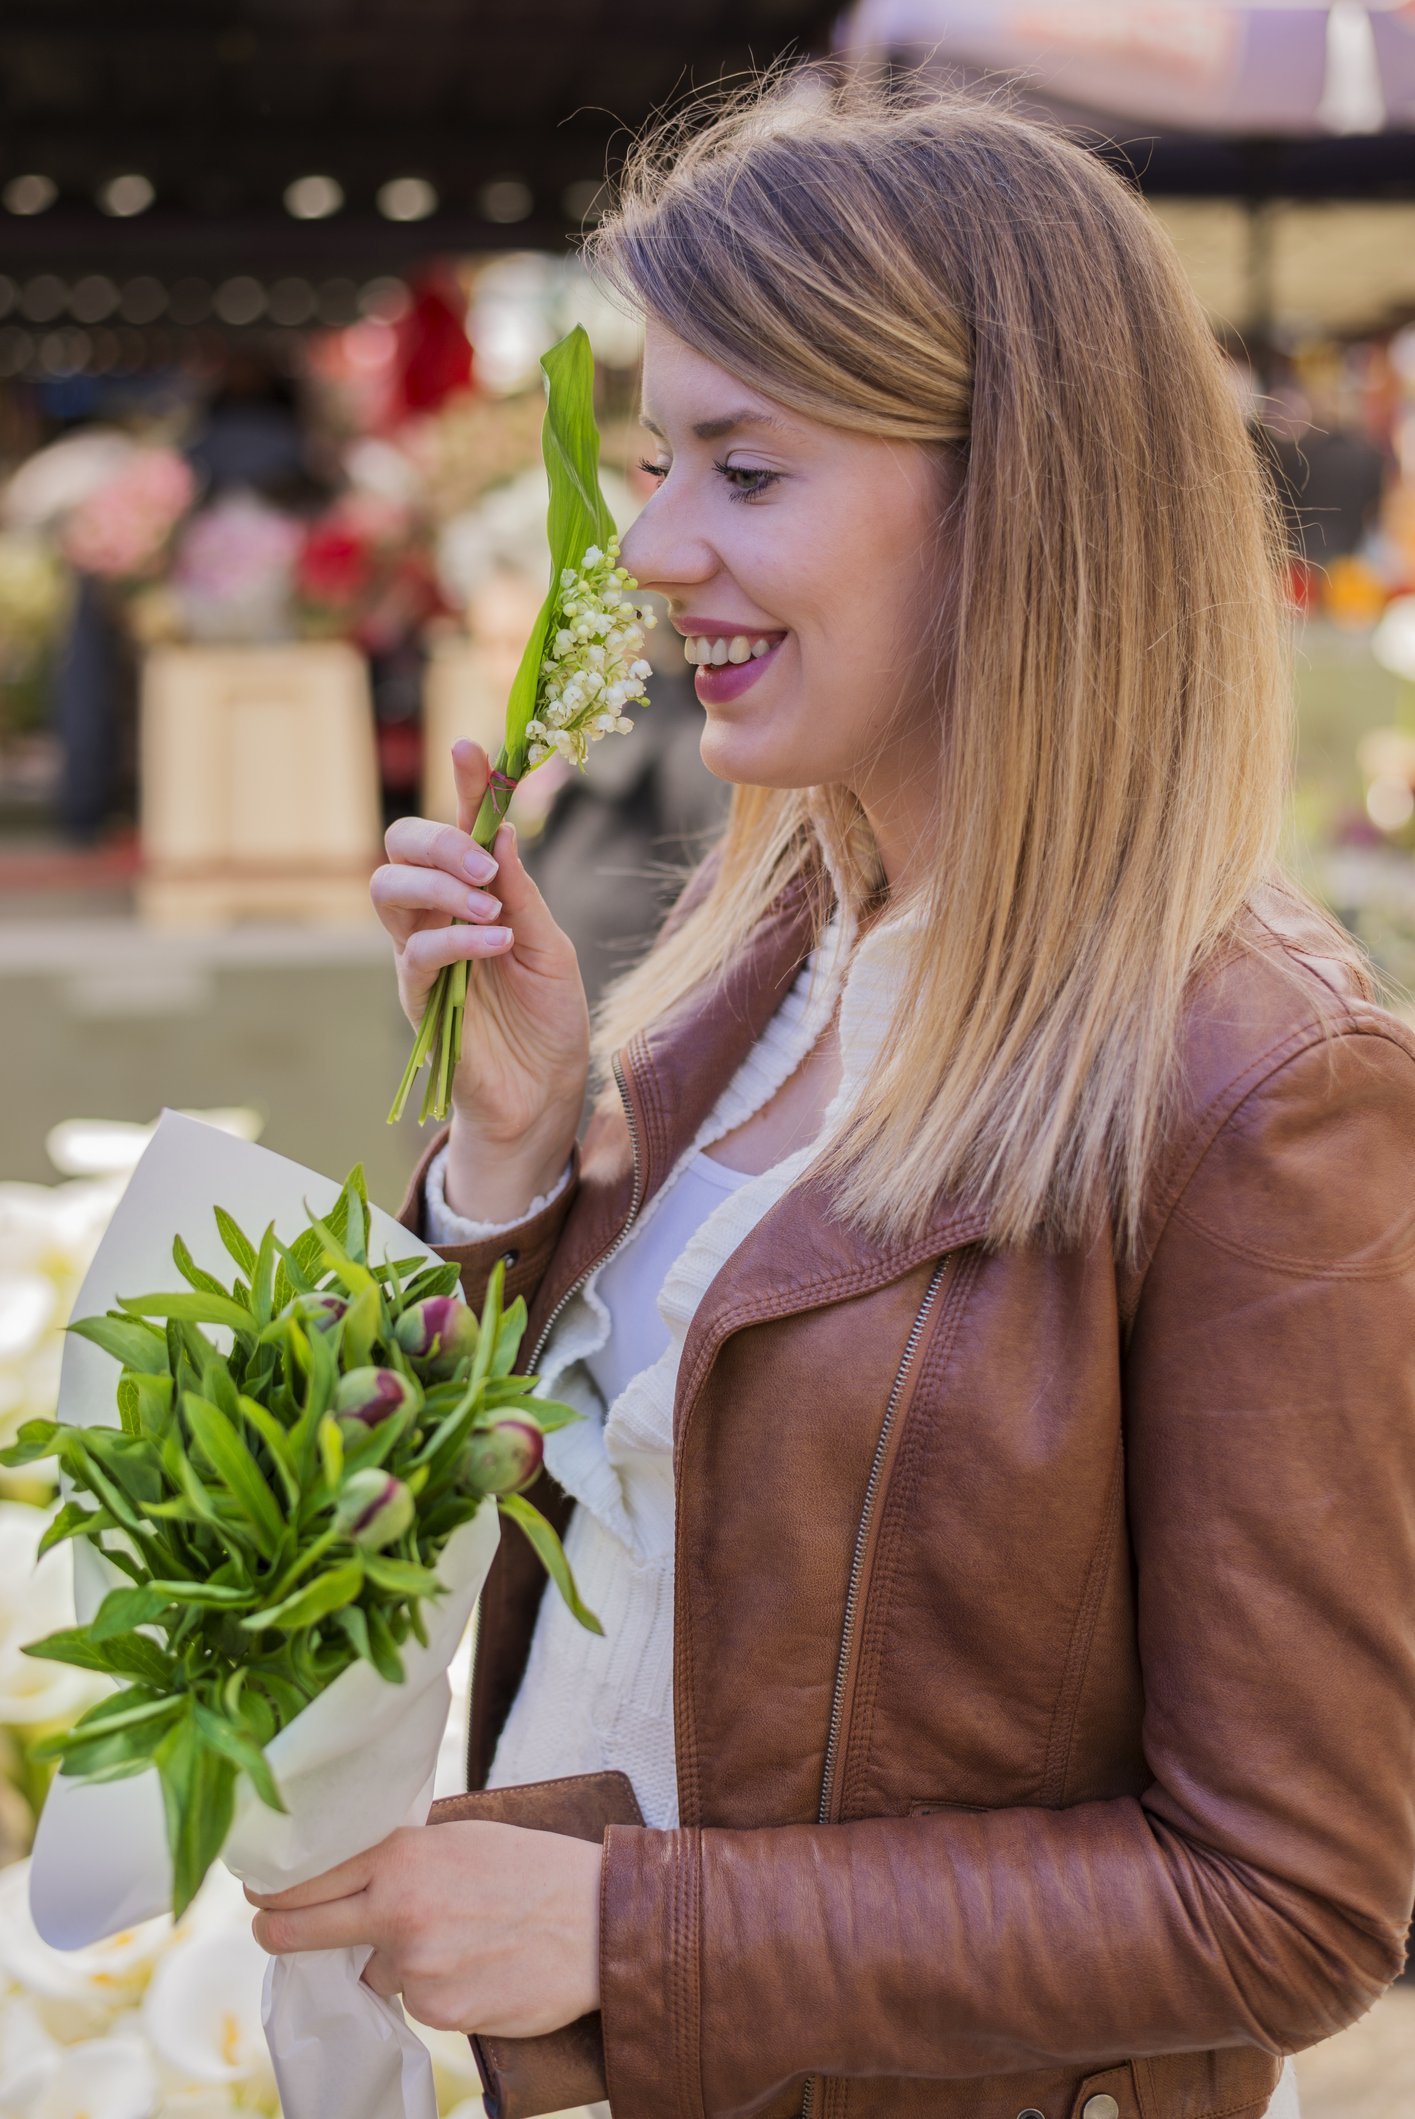 Frau riecht nach Lilie und kauft Blumen auf dem Markt I Quelle: Getty Images